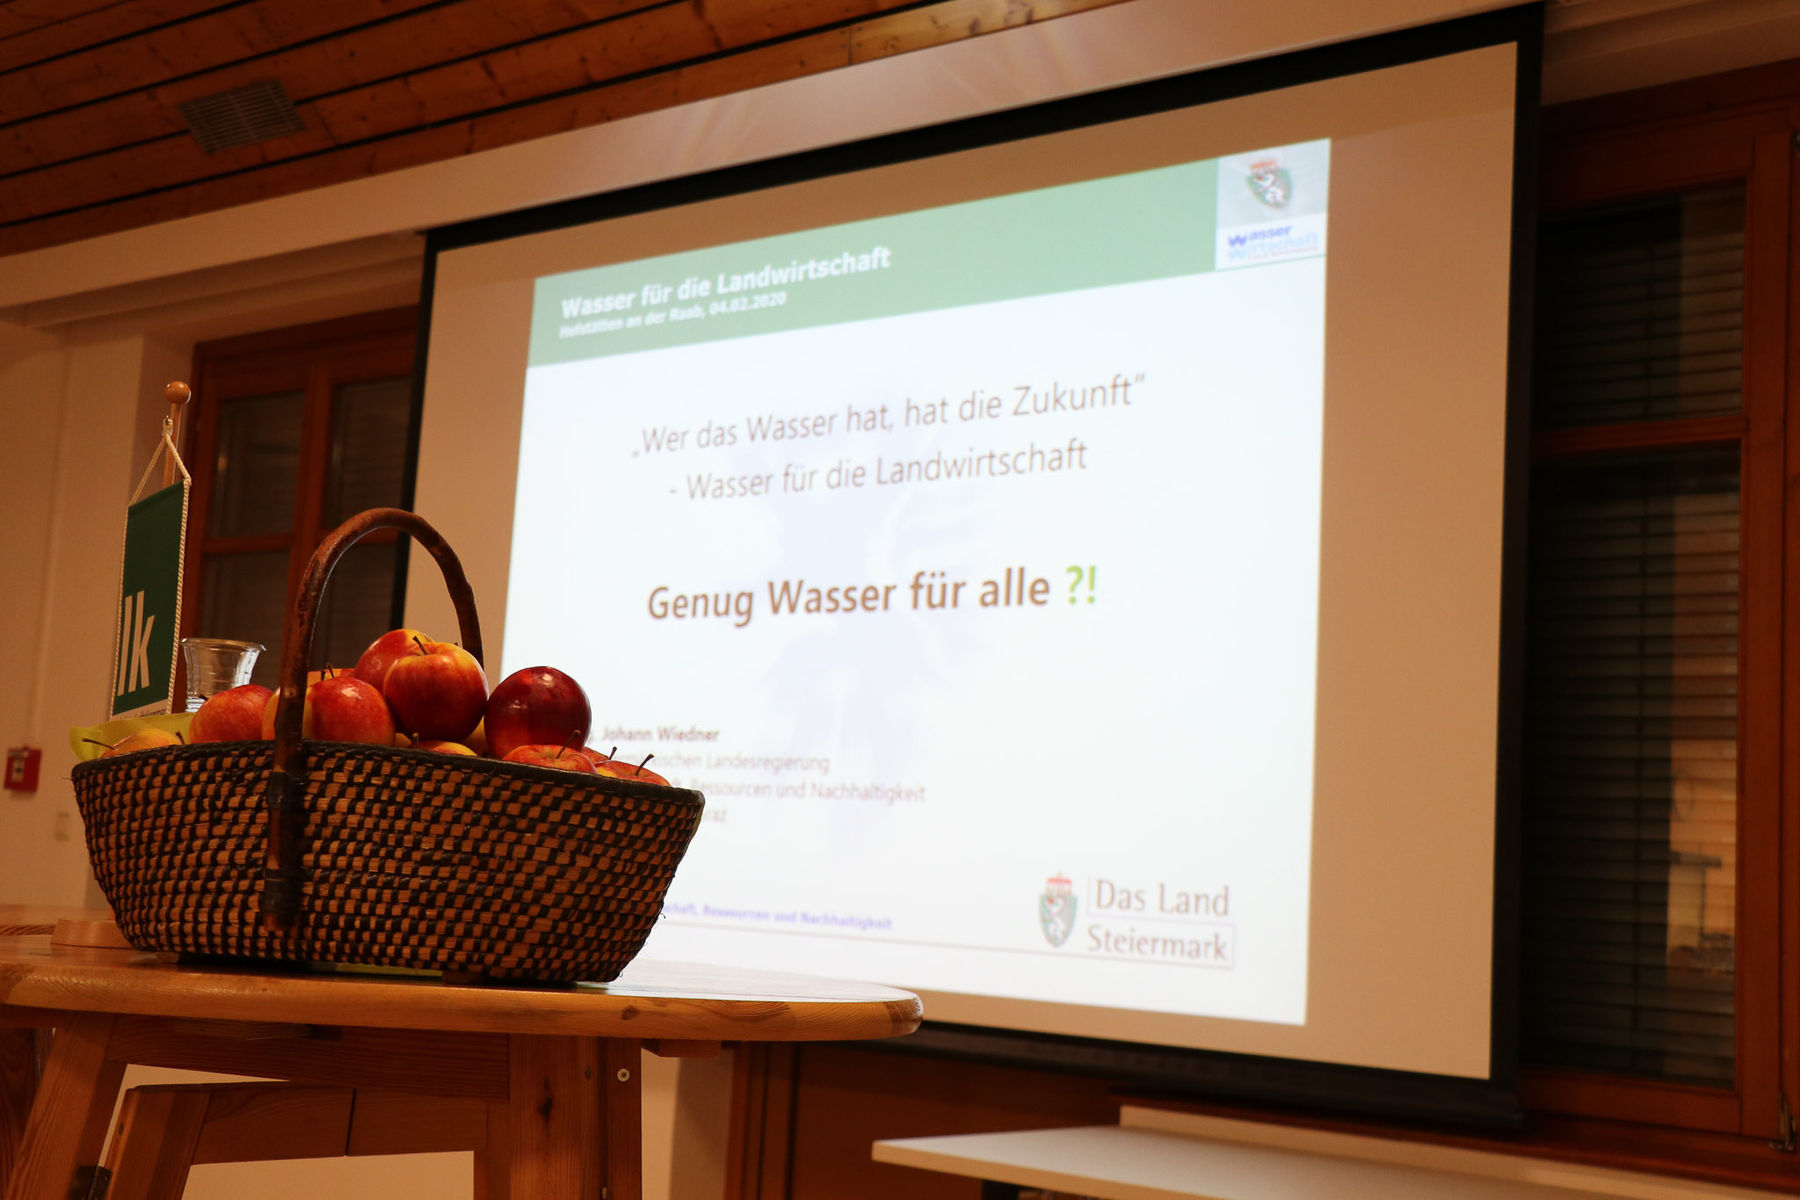 Klimawandel und Wasser für die Landwirtschaft waren die Themen des LK-Wintergespräches in Weiz © Johann Rath / Landwirtschaftskammer Steiermark